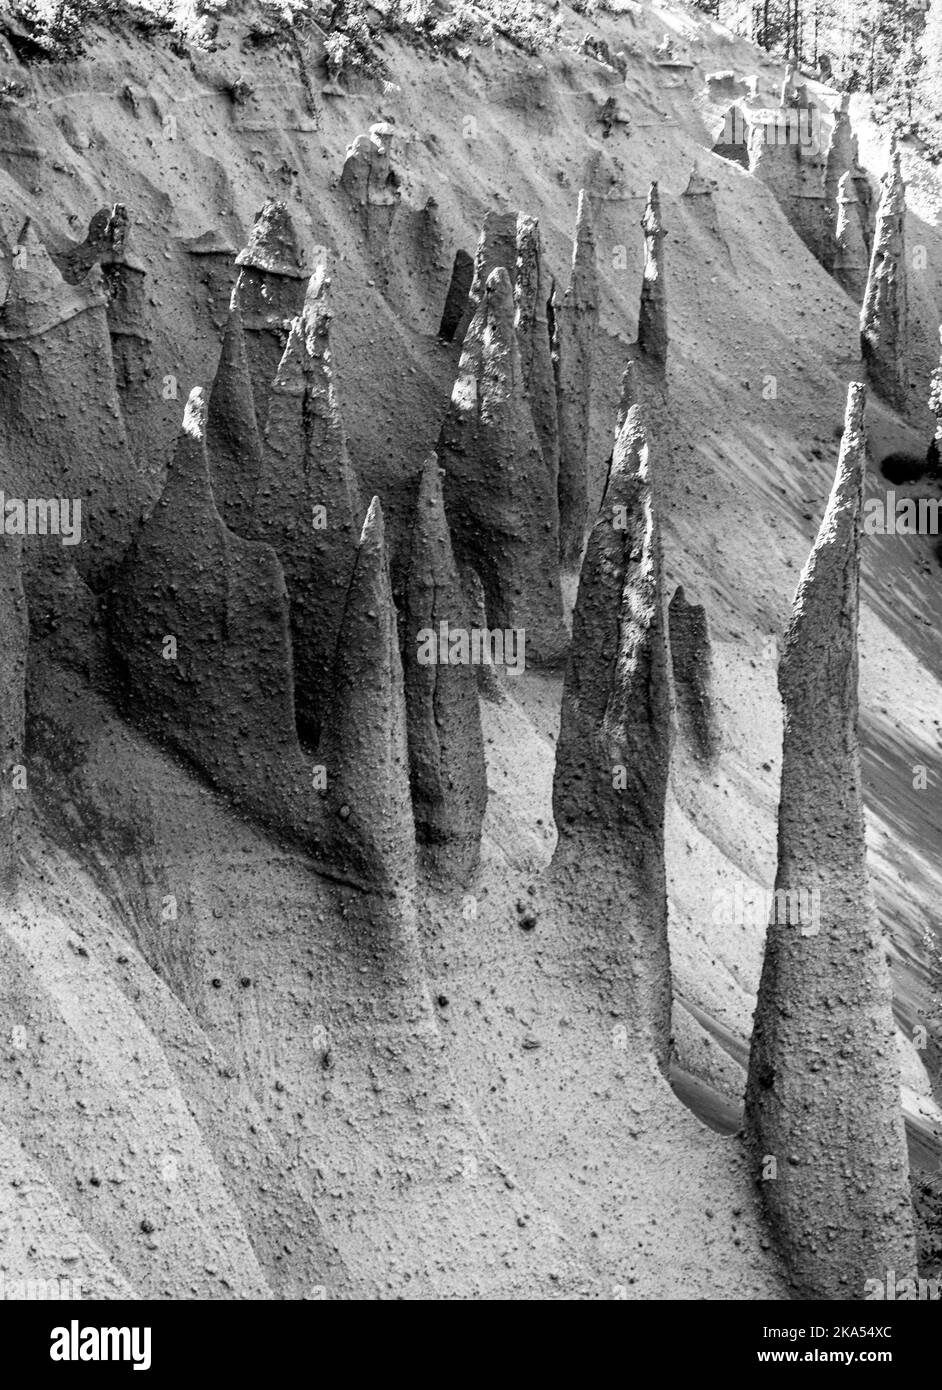 Les Pinnacles, des évents volcaniques qui entourent le bord du lac de cratère dans Oregon Park. Avec une forêt de pins qui pousse autour des flèches pointues. Banque D'Images